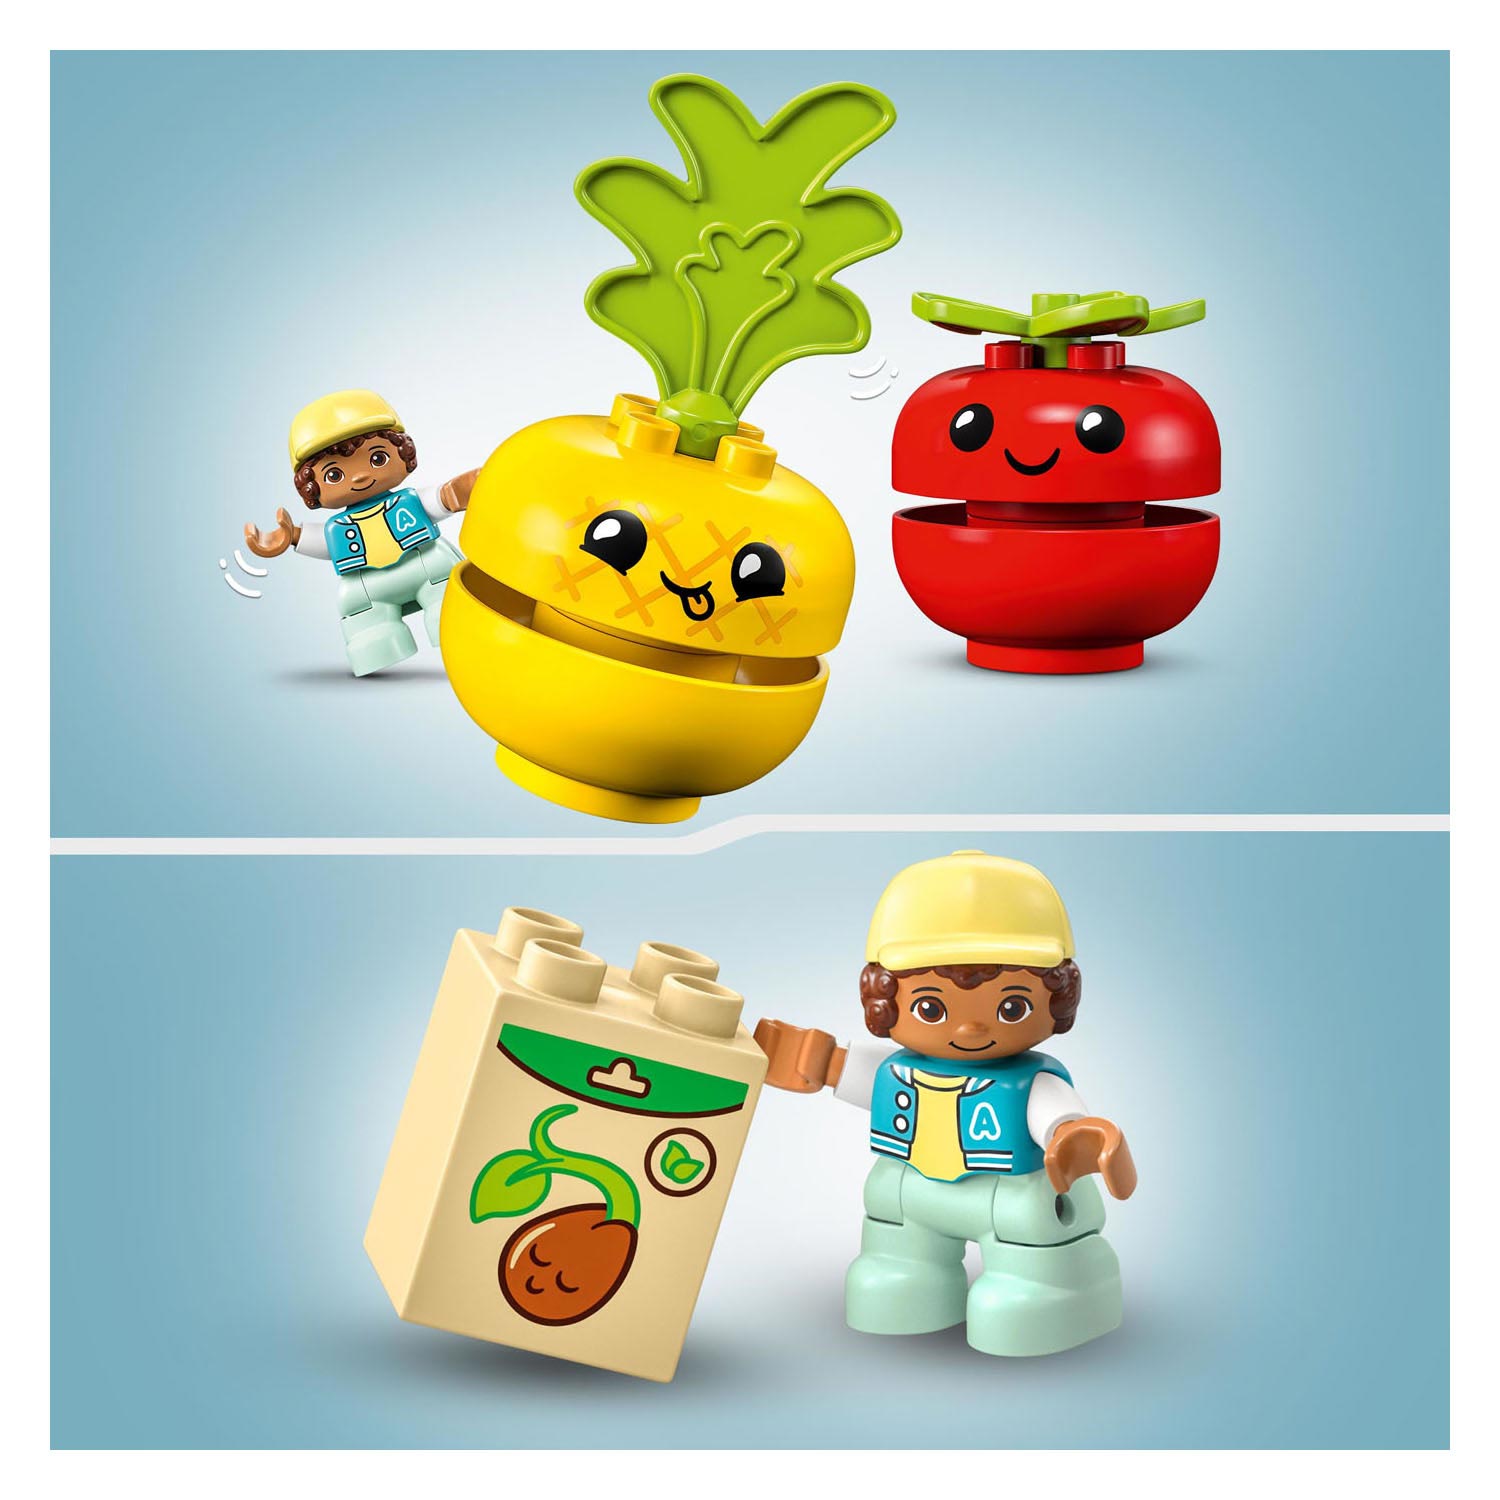 LEGO Duplo 10982 Le tracteur à fruits et légumes